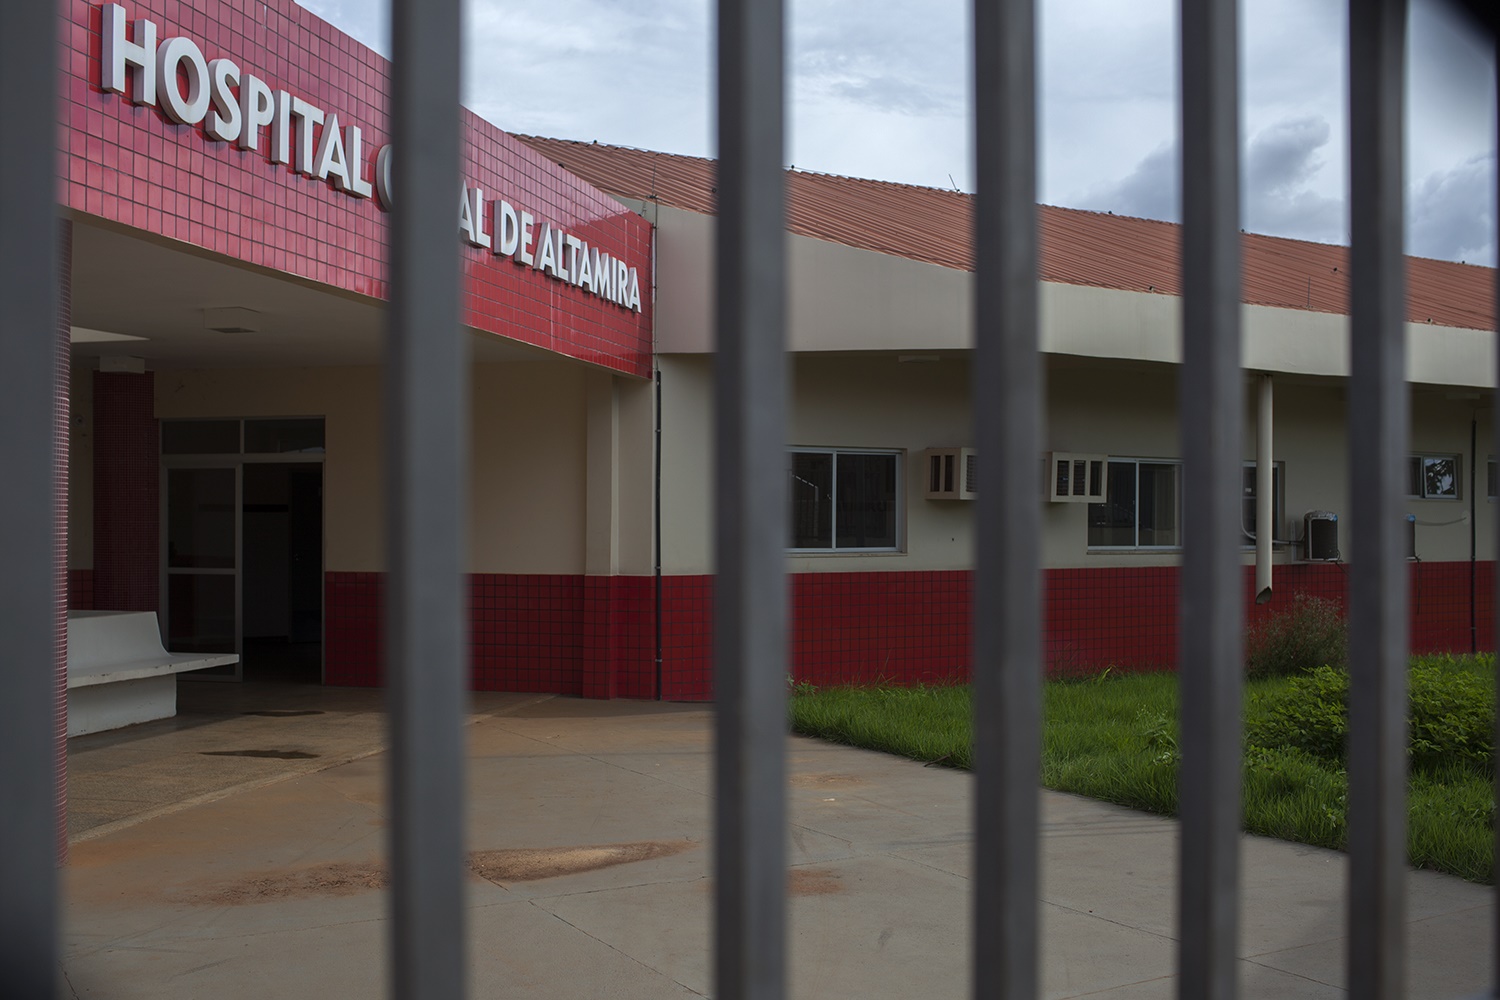 Uma das condicionantes para a instalação da usina era a construção do Hospital Geral de Altamira para amenizar o impacto do aumento da população. Ele ficou pronto com atraso e continua fechado, sem equipamentos e médicos